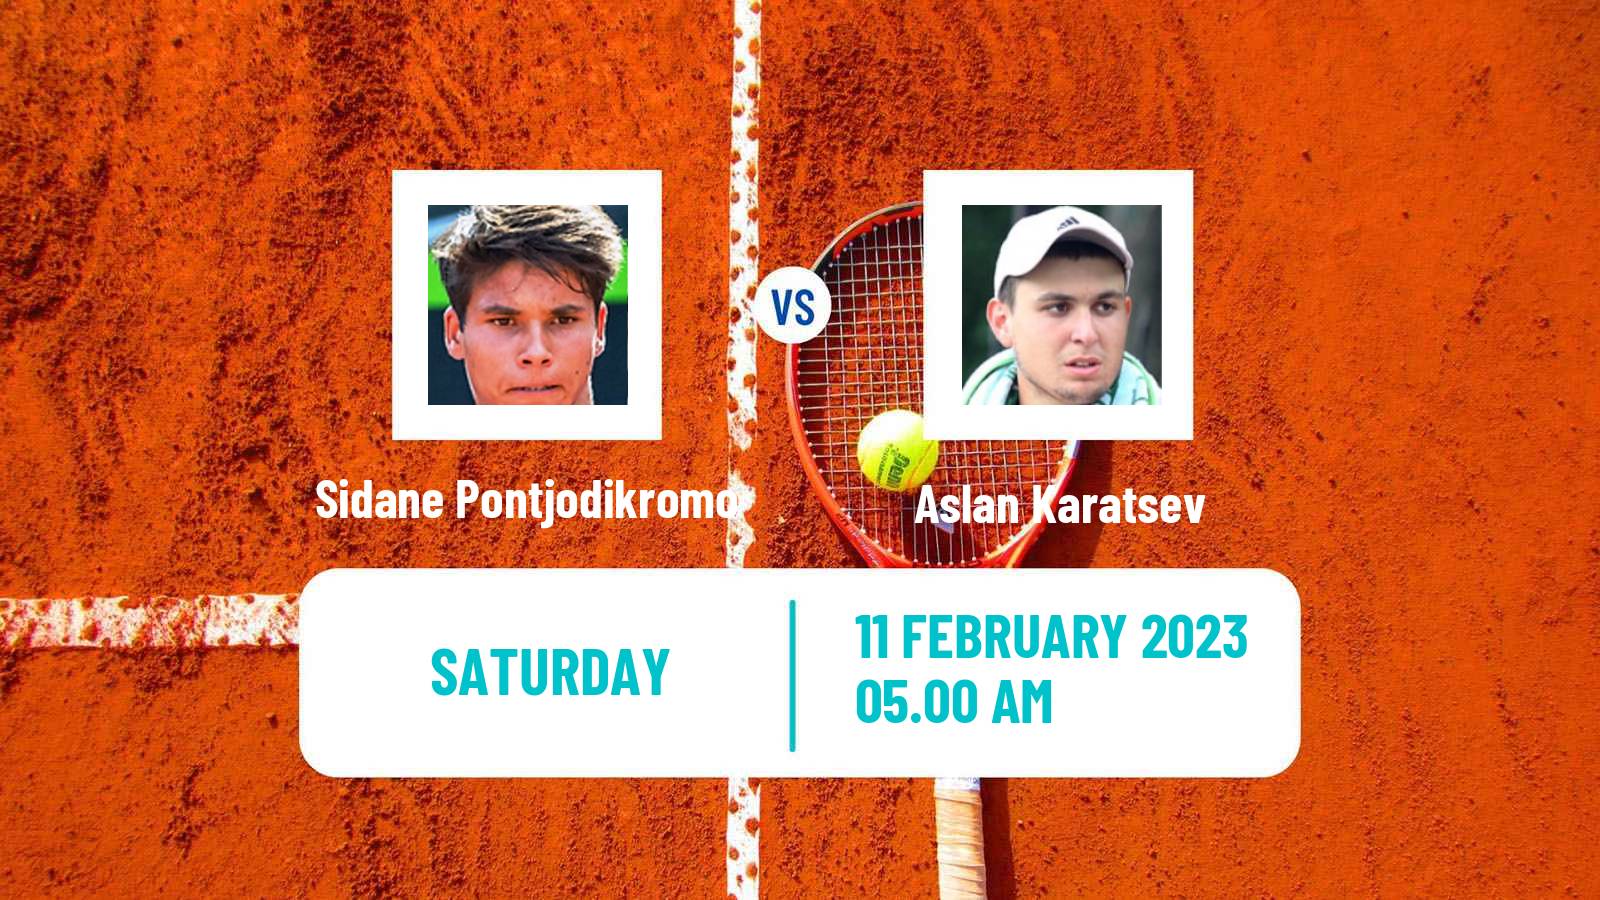 Tennis ATP Rotterdam Sidane Pontjodikromo - Aslan Karatsev